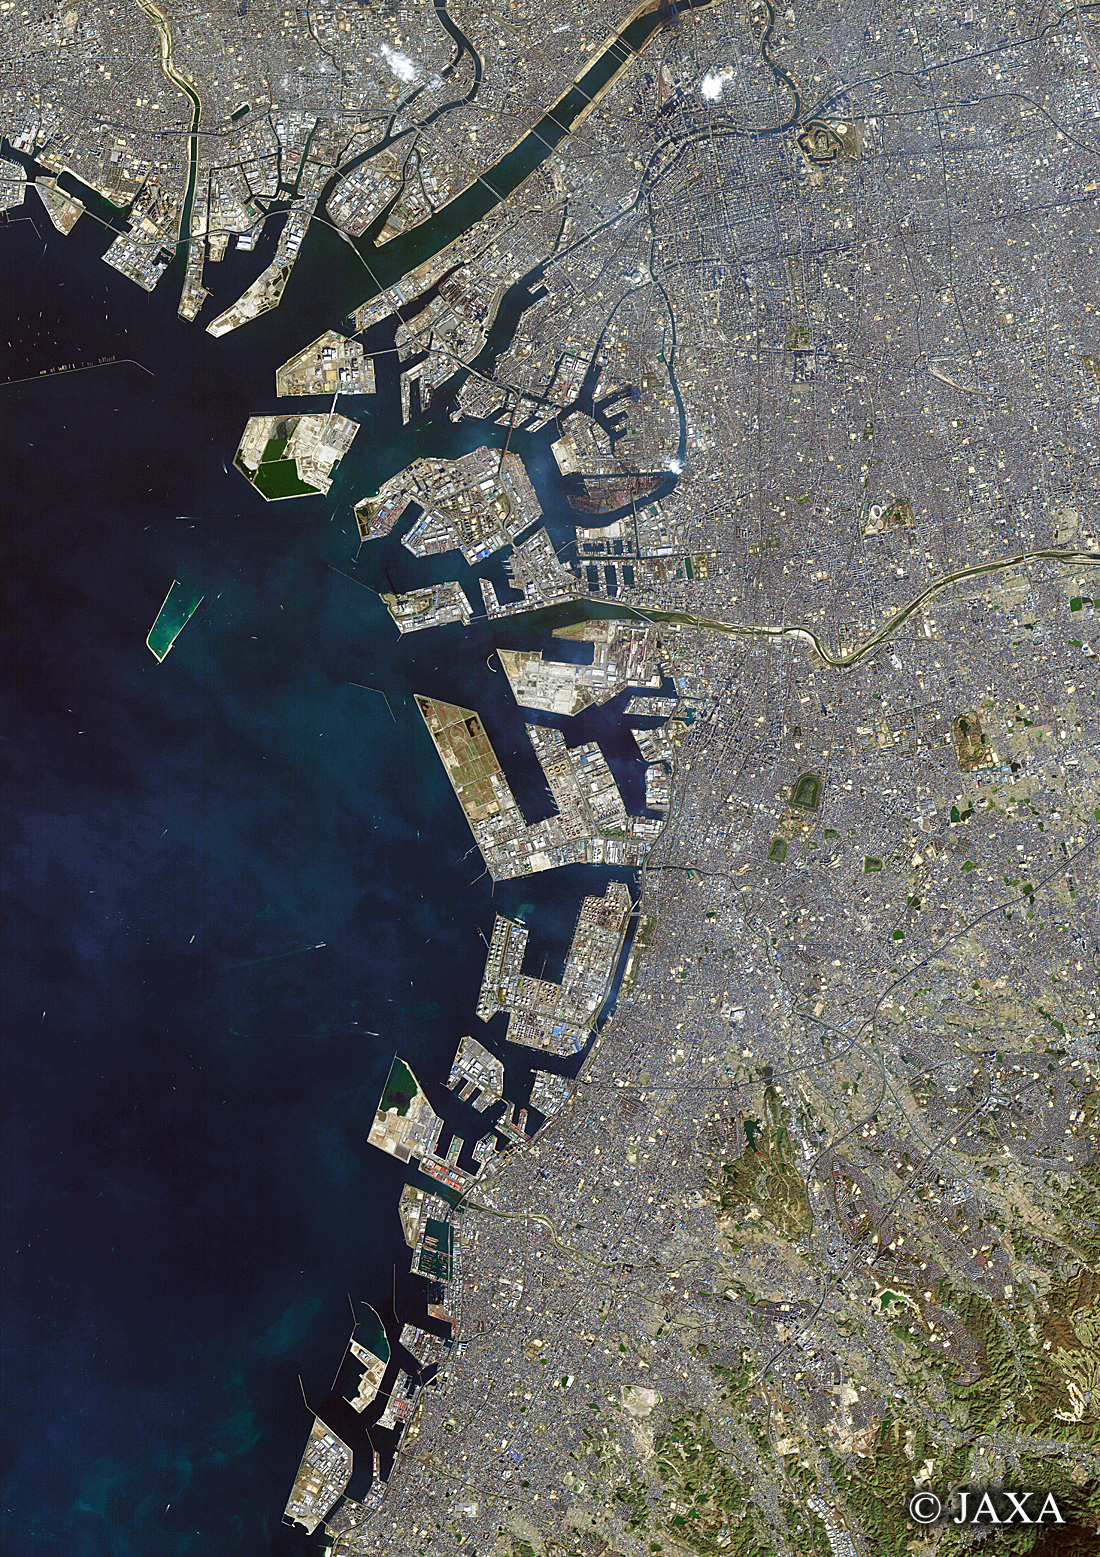 だいちから見た日本の都市 大阪:衛星画像